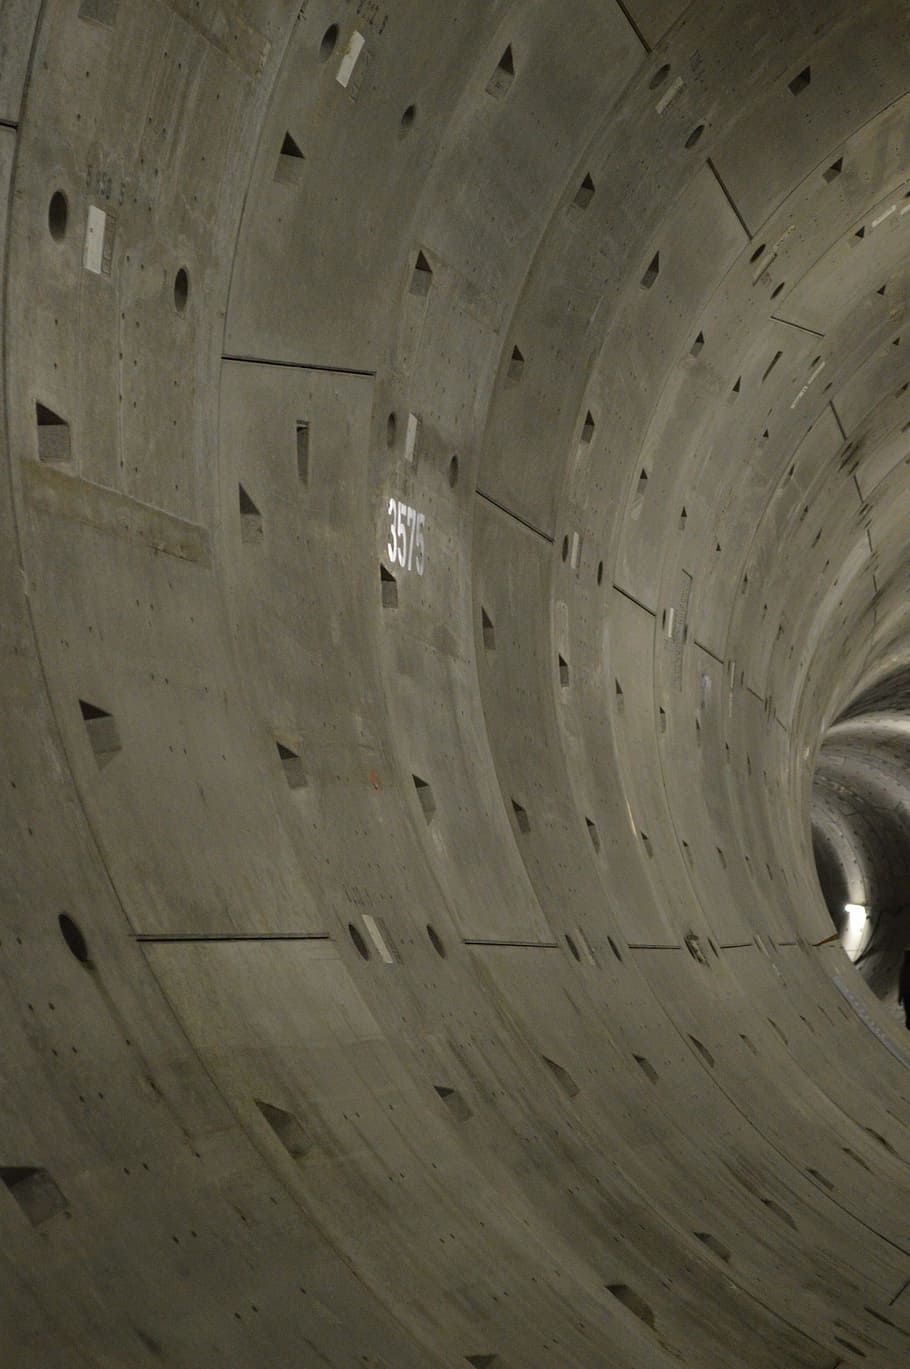 terowongan, beton, kedalaman, abu-abu, gelap, konstruksi, zuislijn utara, amsterdam, tidak ada orang, tampilan sudut rendah